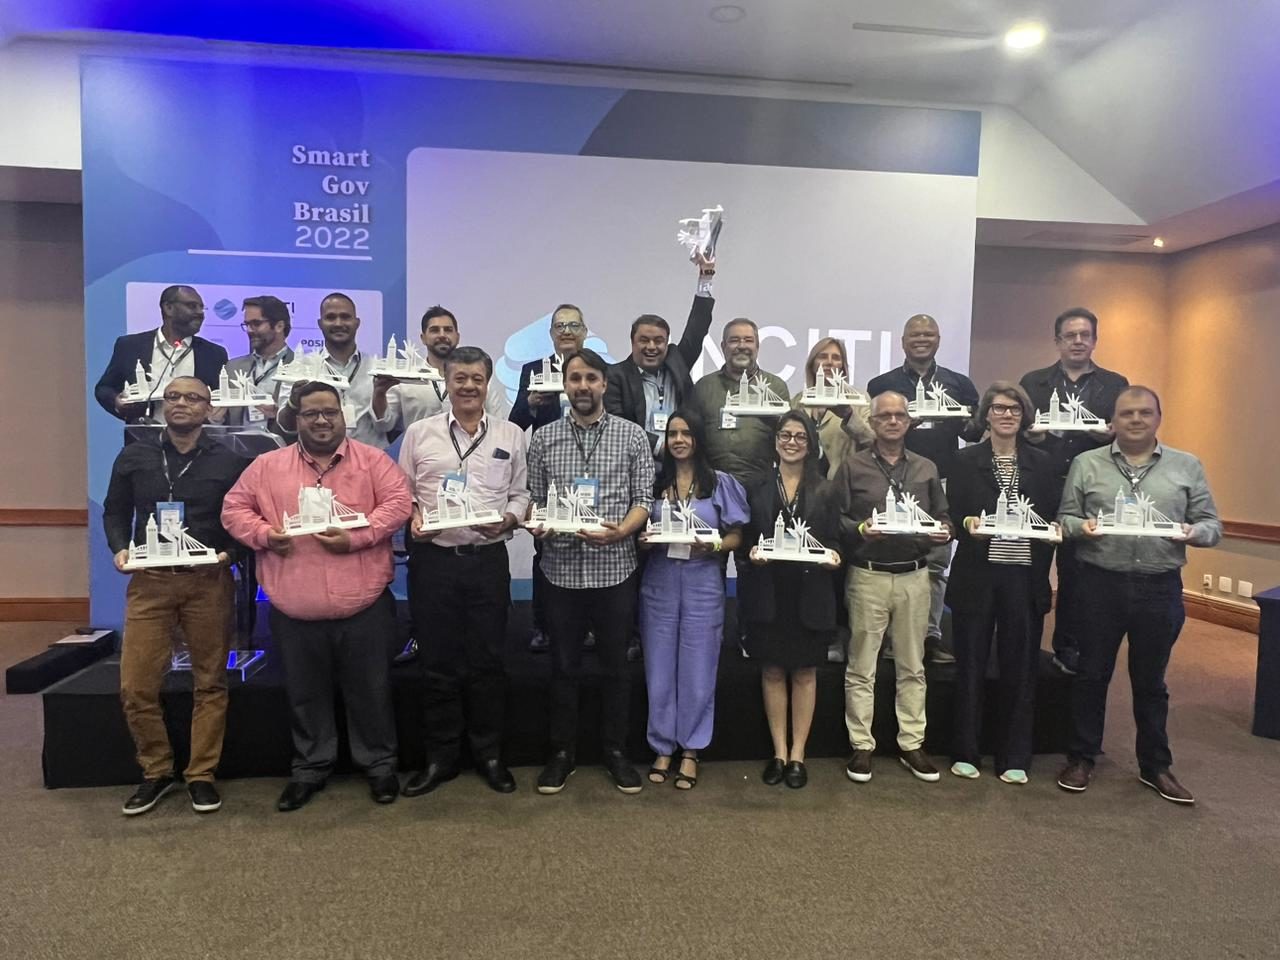 DESCRIÇÃO IMAGEM: foto com várias pessoas representantes das cidades premiadas, seguram troféu. Enfileirados em frente a painel do evento Smart Gov Brasil 2022